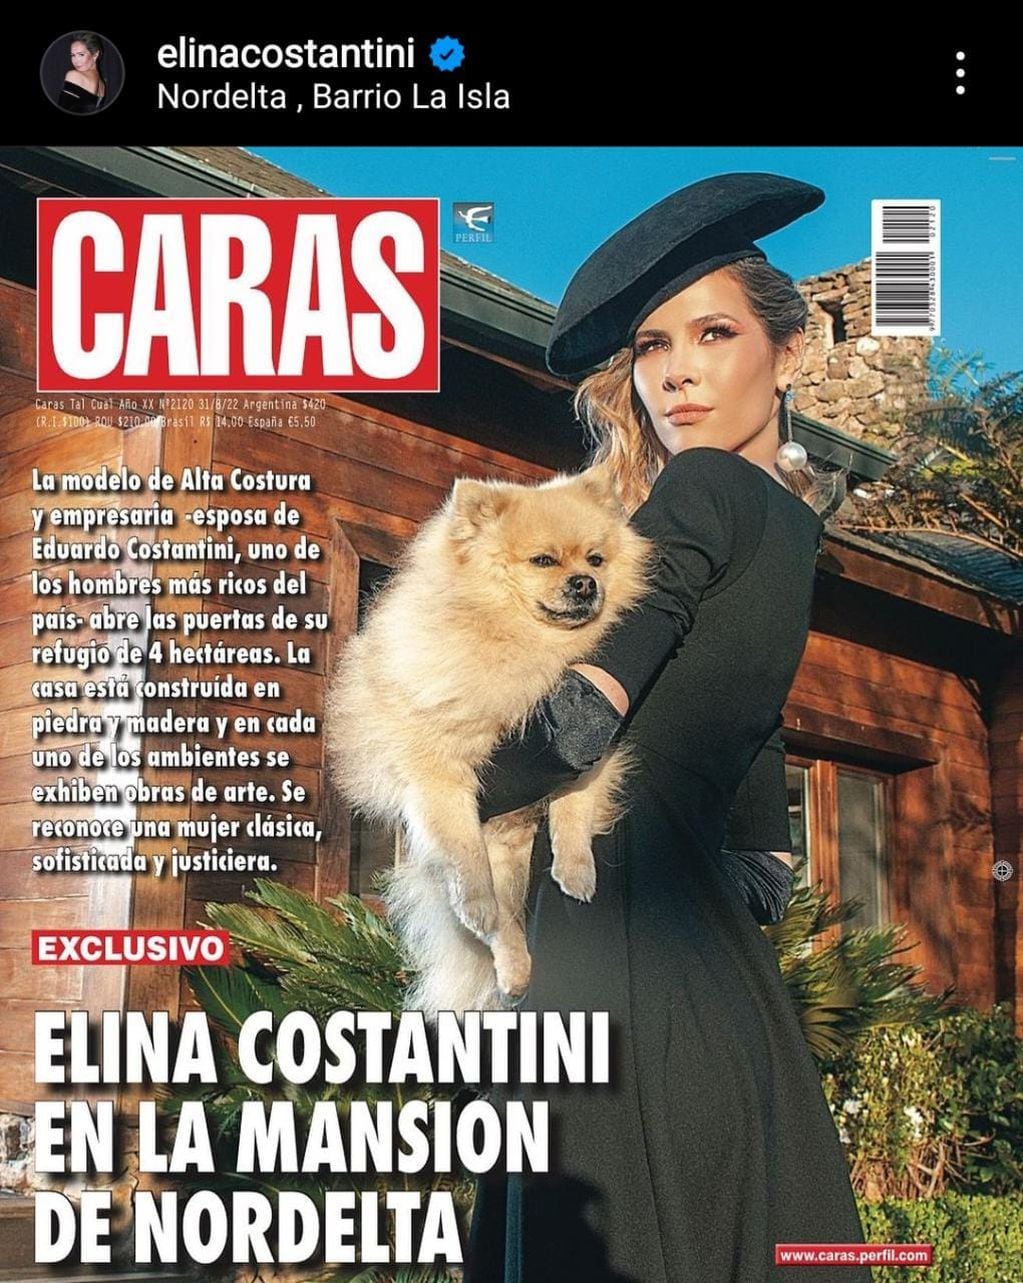 Elina Costantini mostró su casa de Nordelta y posó junto a su perro Gino.